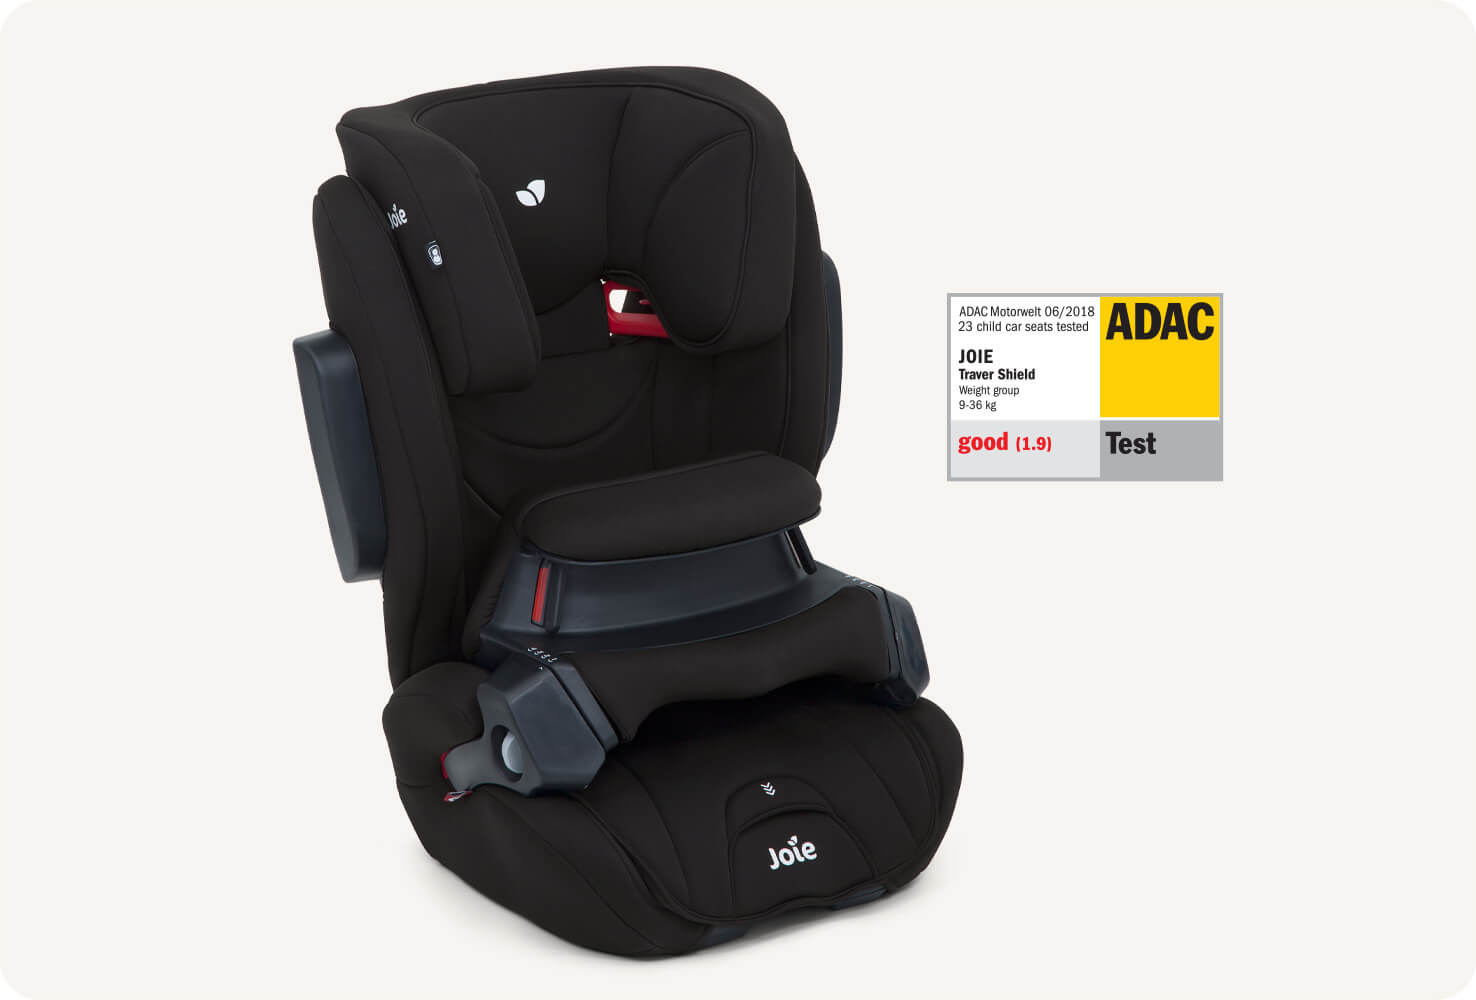 Silla de coche Joie traver shield negra en ángulo orientado a la derecha. A la derecha de la silla de coche, se muestra un premio ADAC que explica el galardón conseguido por la silla.